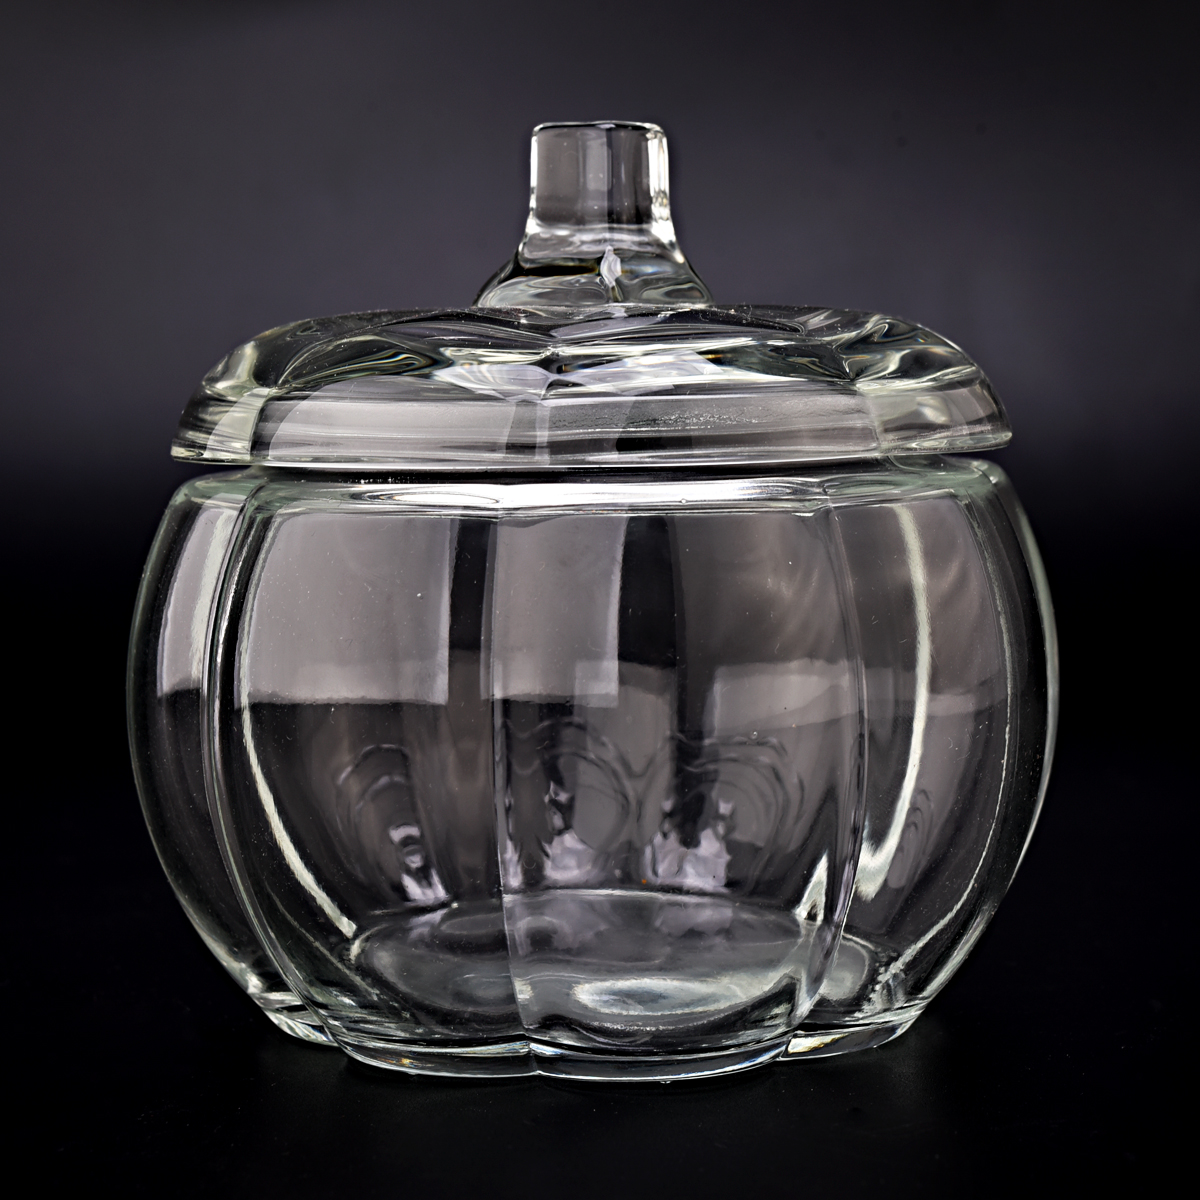 14 oz de jarra de vela de vidrio transparente con forma de calabaza con proveedor de tapa